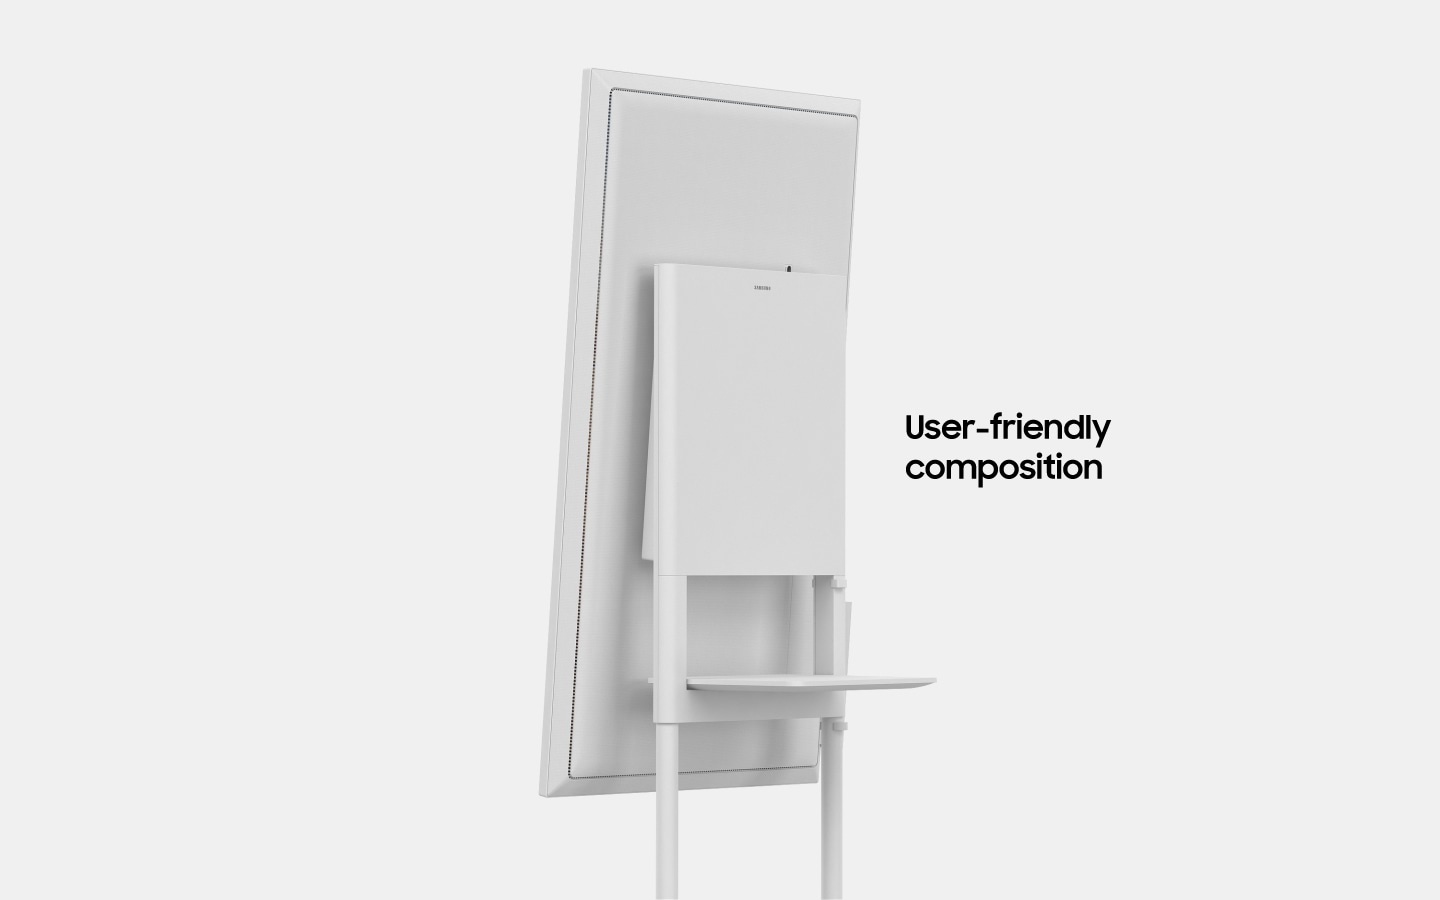 Une image qui présente un appareil Samsung Flip qui tourne légèrement vers la droite, avec un texte qui indique "Composition qui facilite l'utilisation" (6-5).